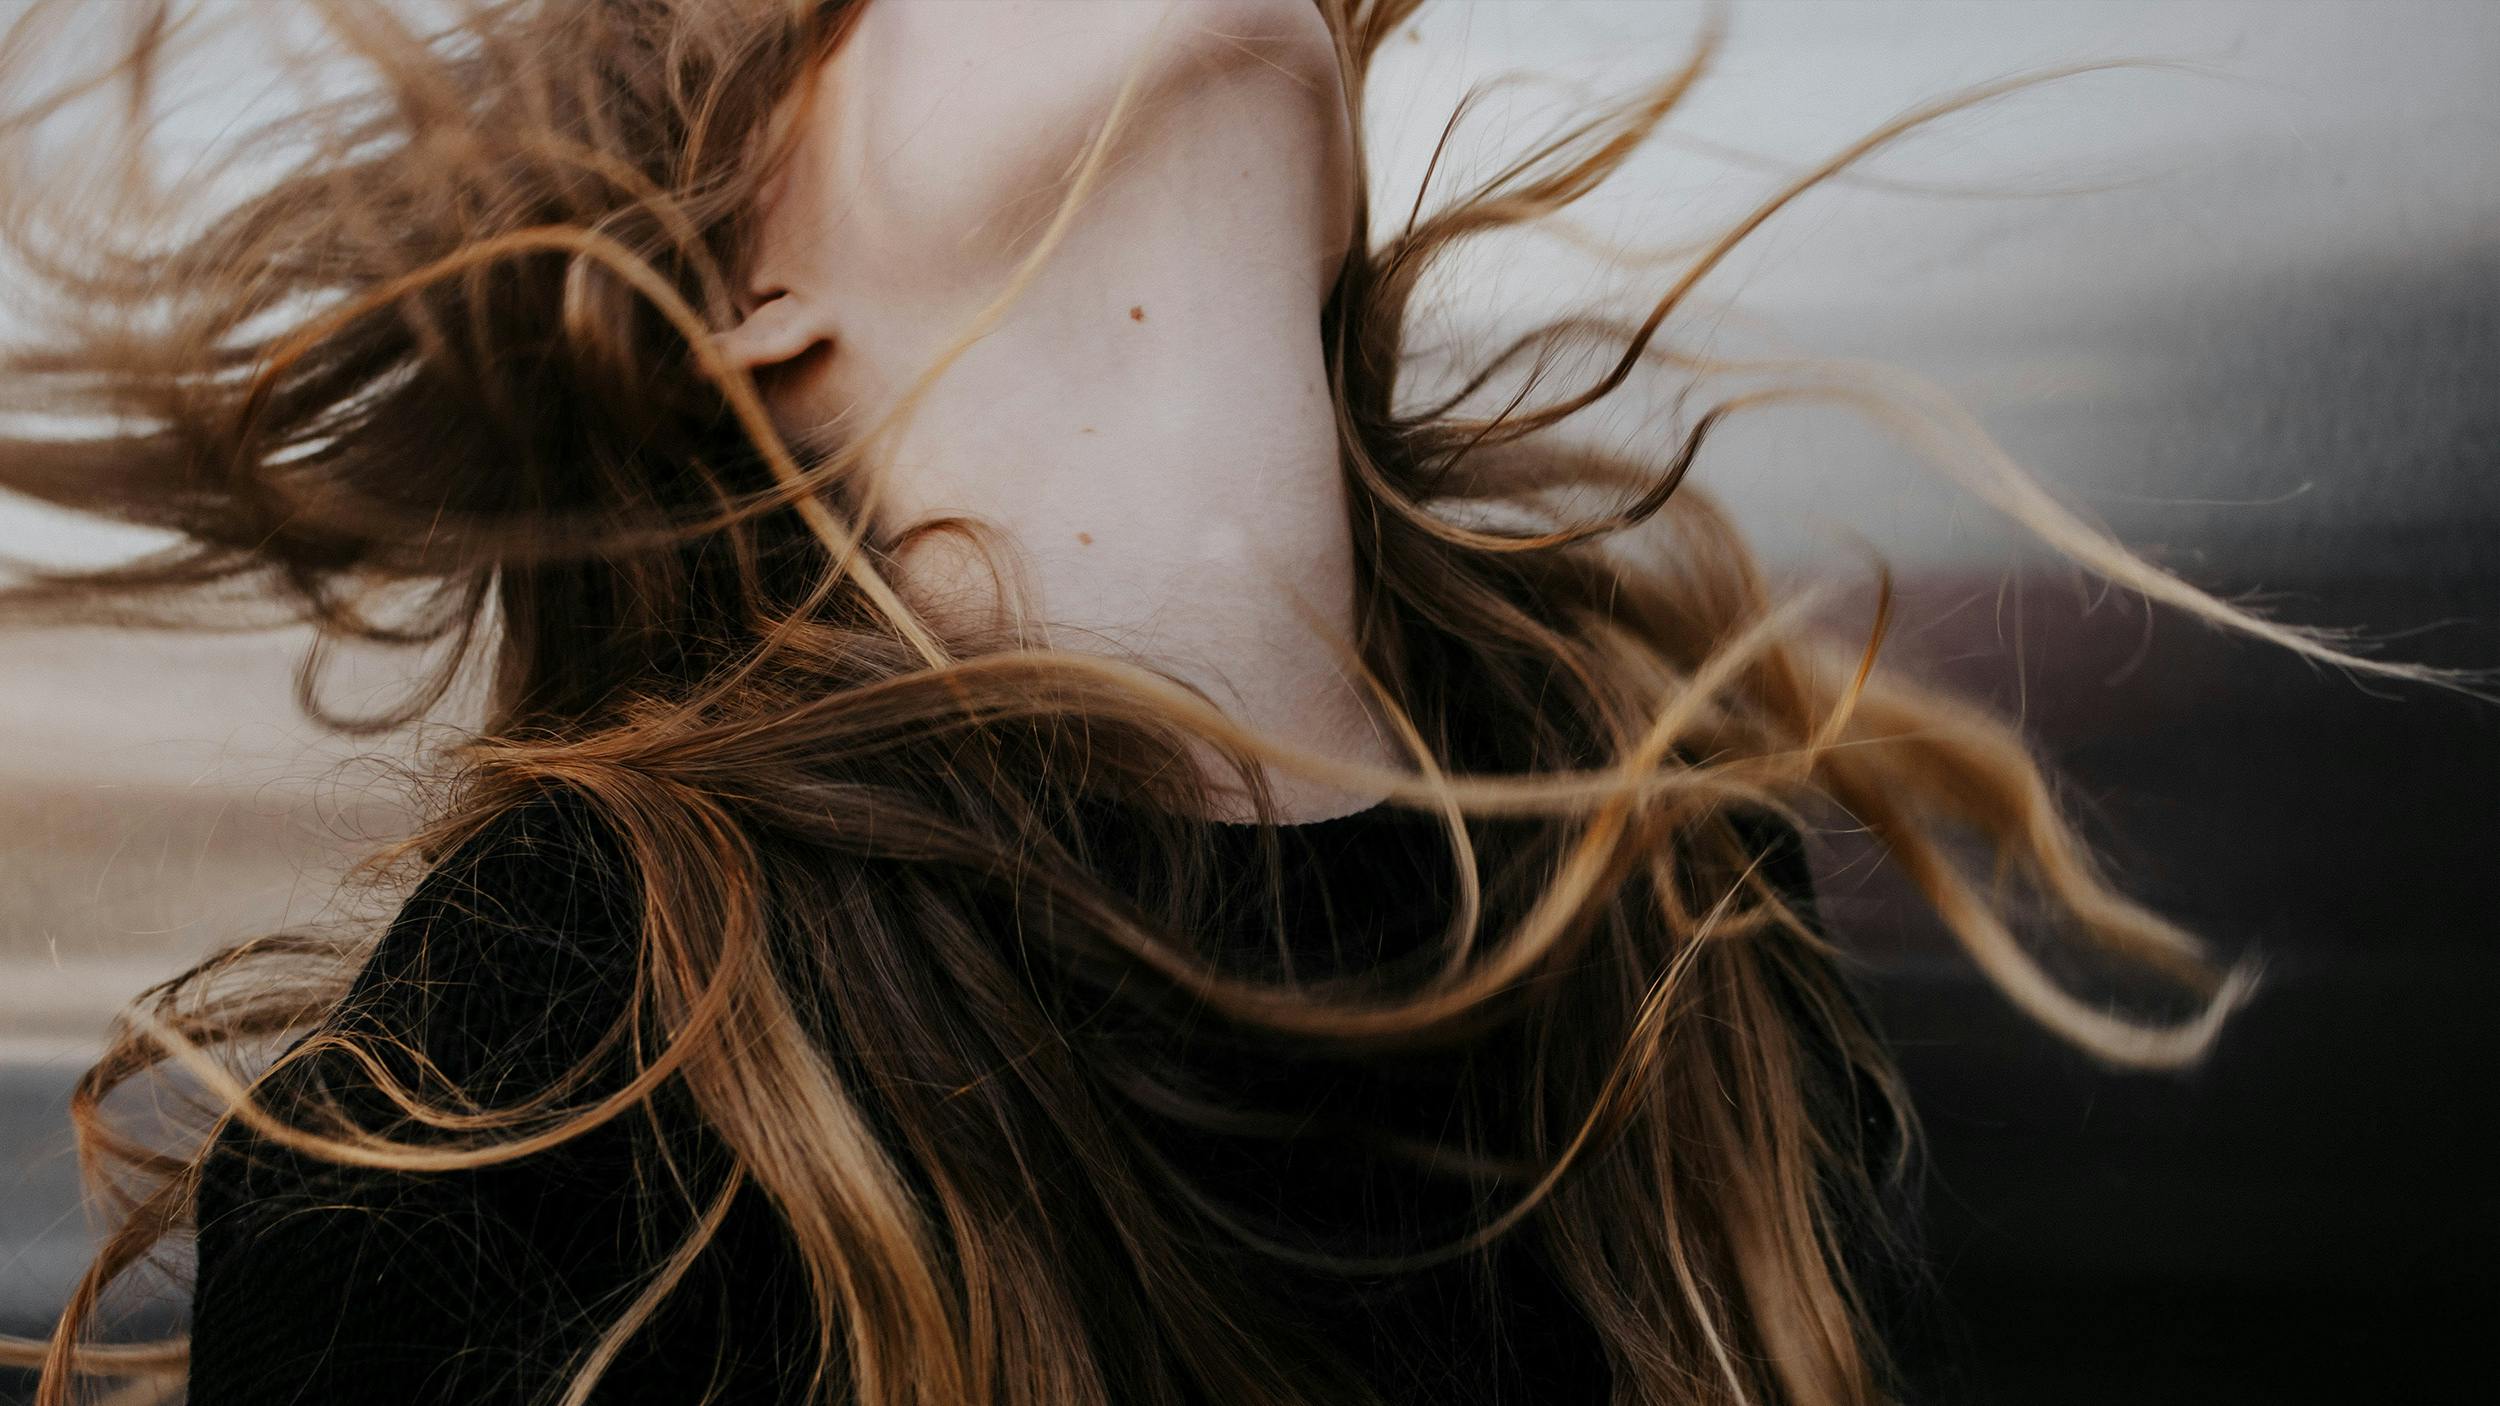 Man sieht den Hals und die wilden Haare einer Frau, vom Wind zerzaust, kein Gesicht